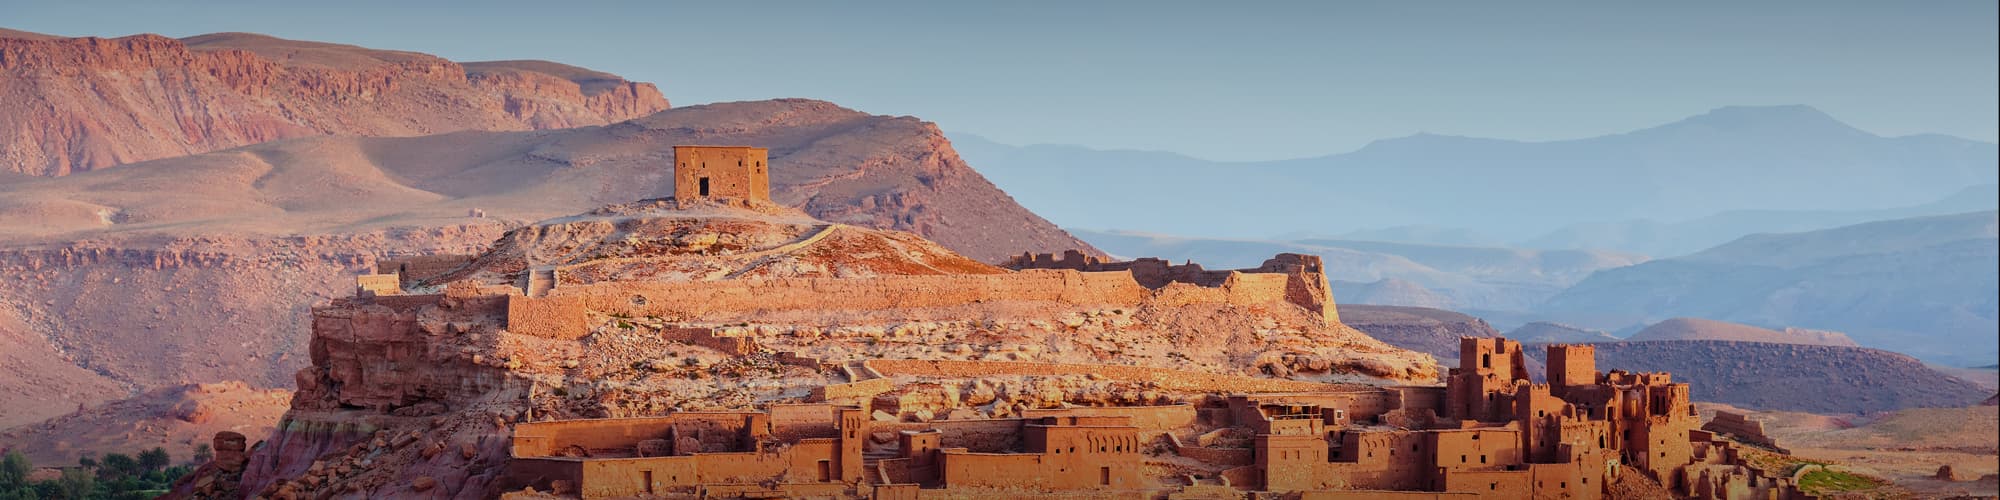 Voyages en famille au Maroc